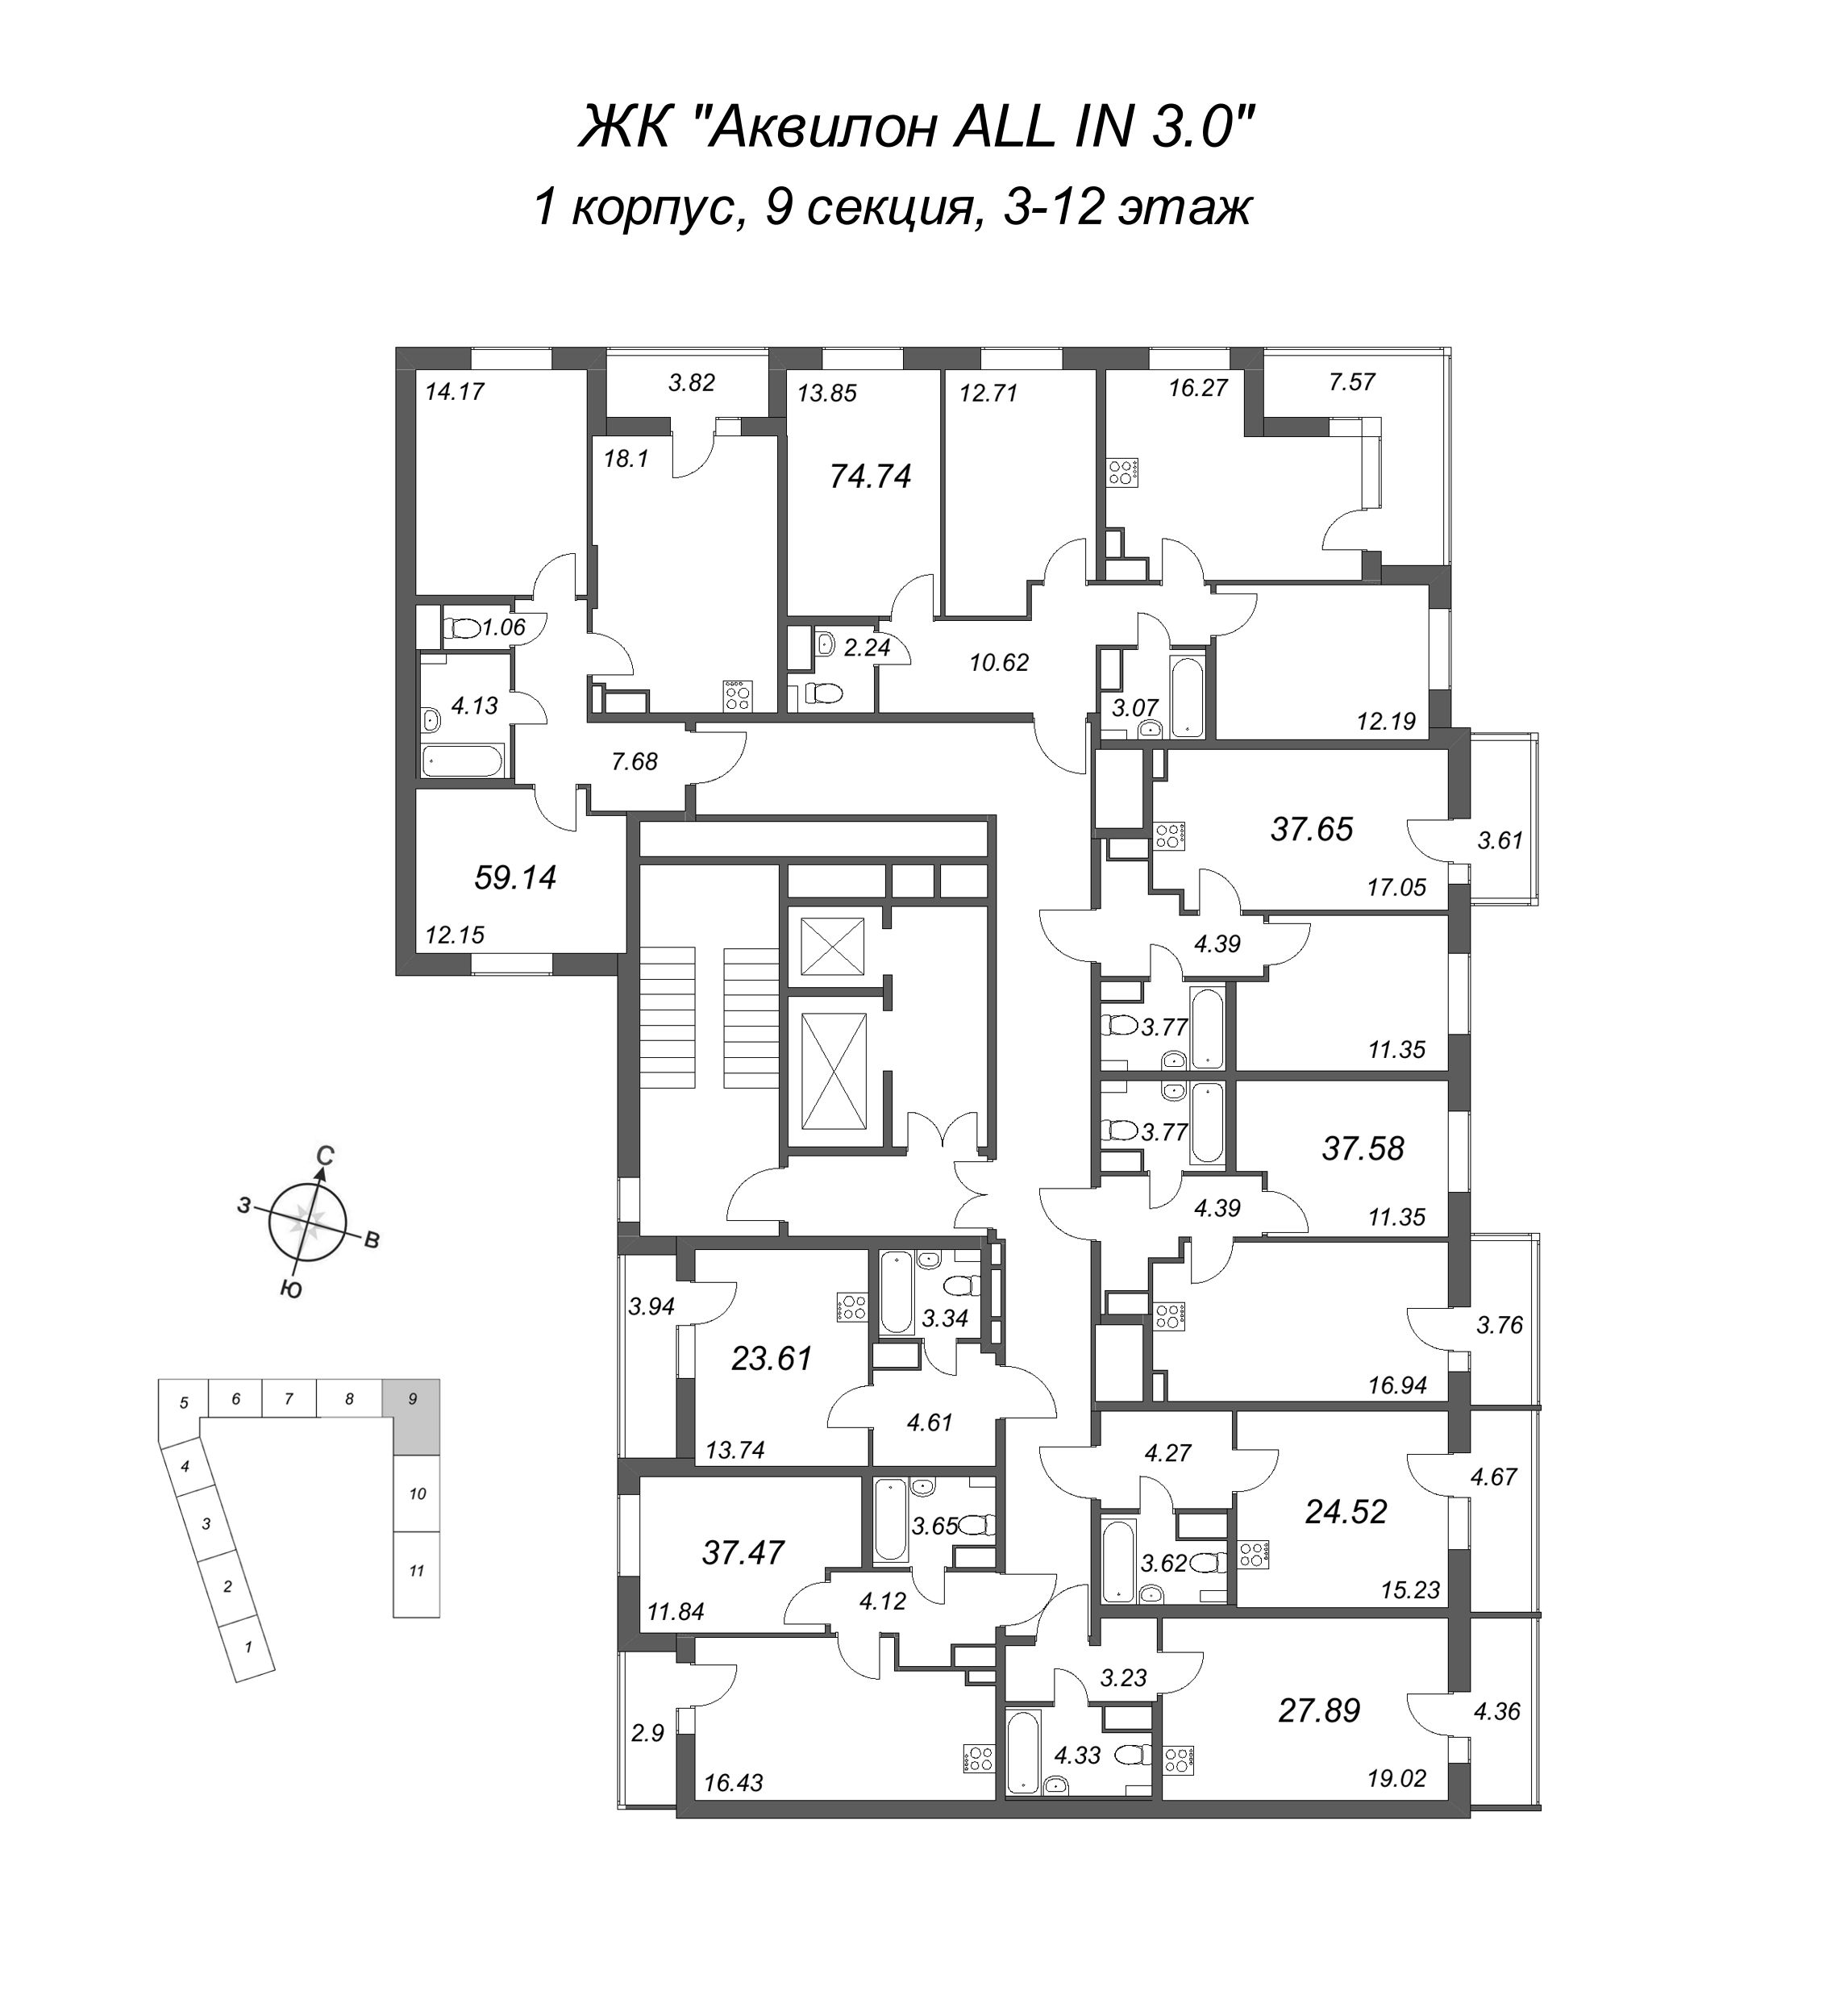 2-комнатная (Евро) квартира, 37.65 м² в ЖК "Аквилон All in 3.0" - планировка этажа